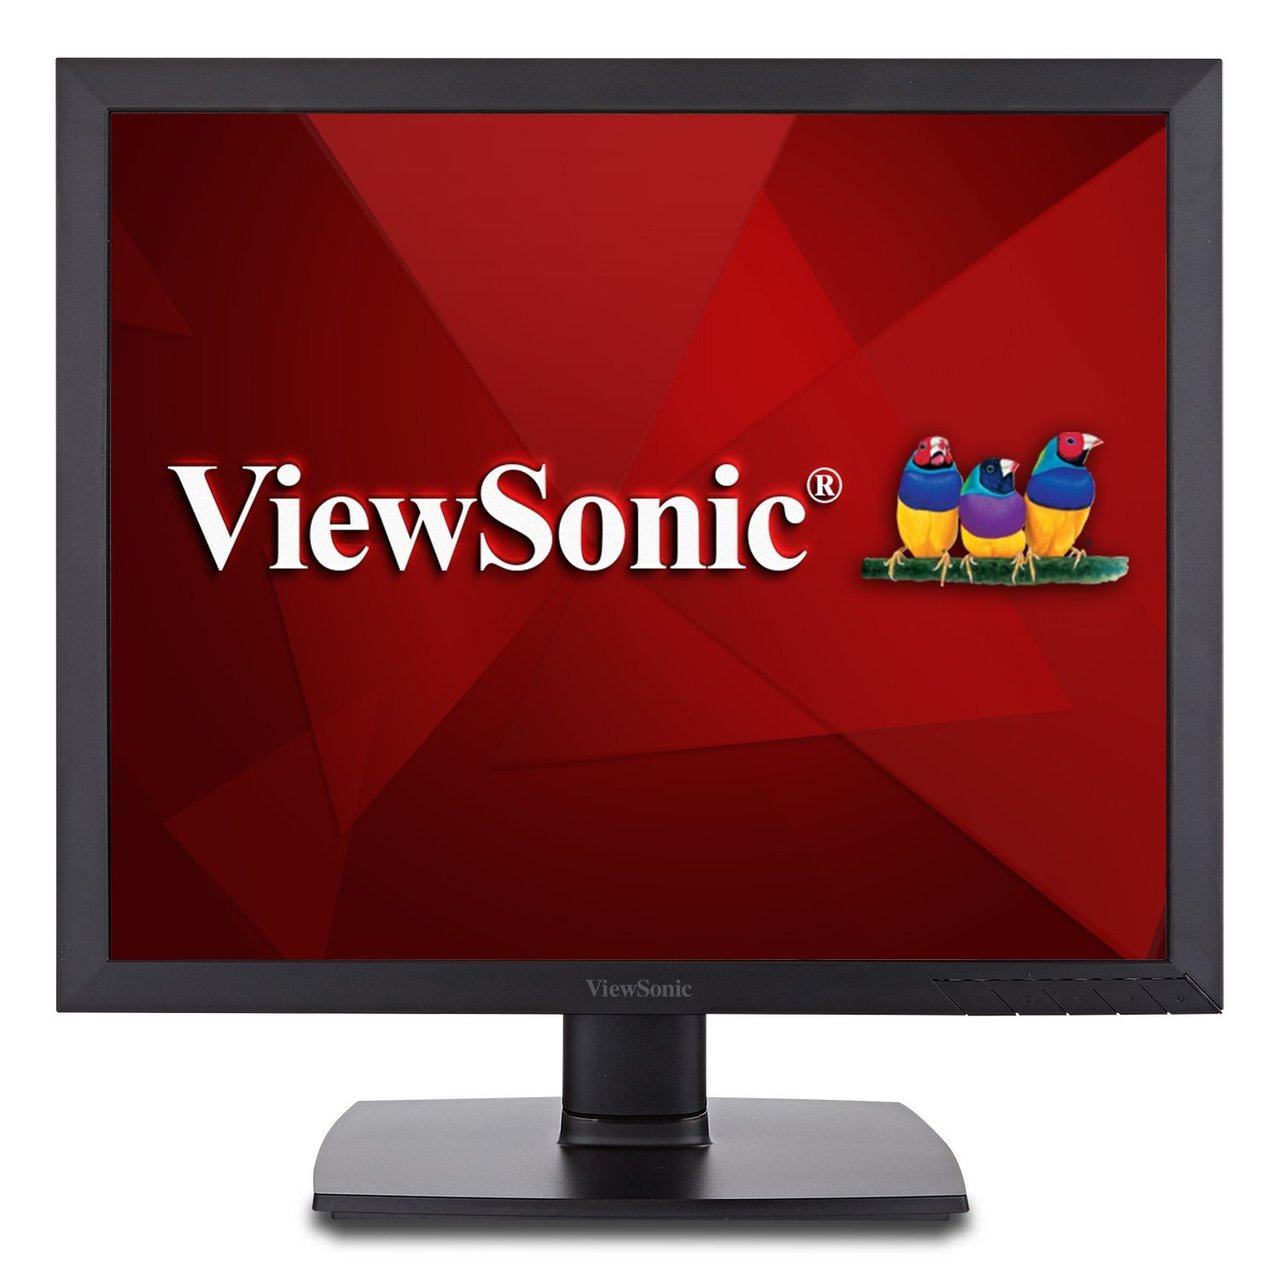 ViewSonic VA951S-R 19" IPS 1024p LED Monitor - C Grade Refurbished